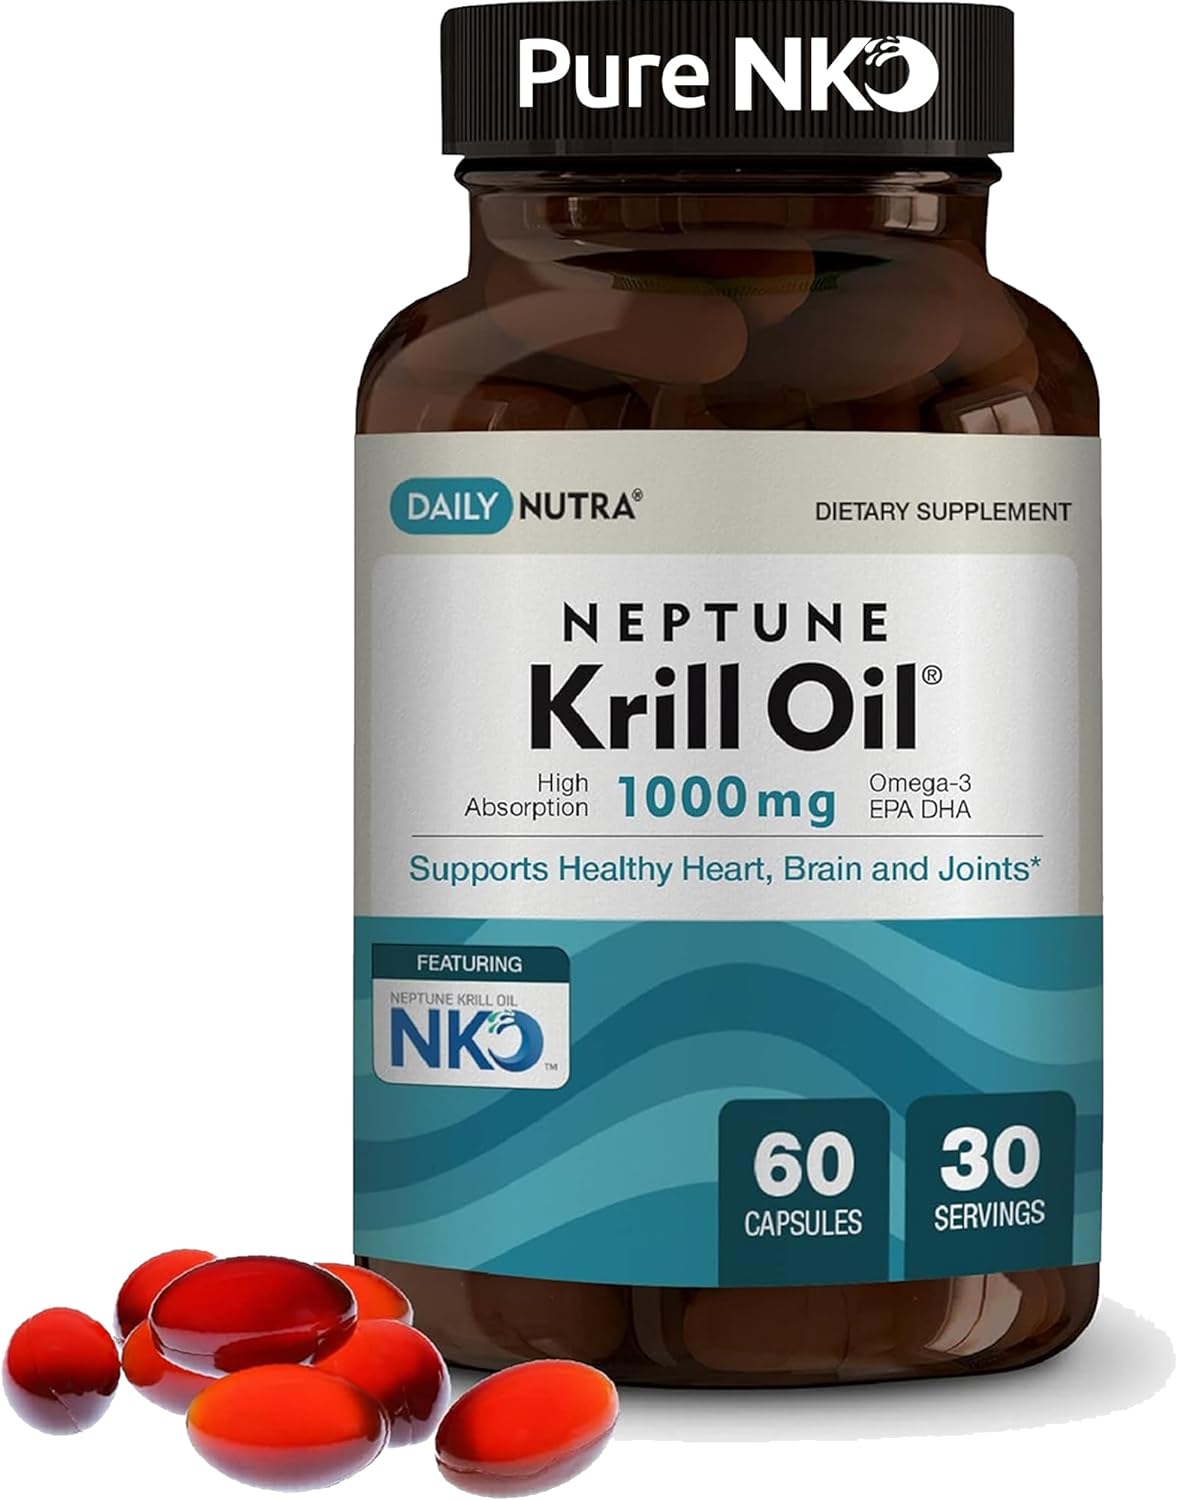 DailyNutra Neptune Krill Oil 1000mg - Antarctic Krill, EPA + DHA, Omeg